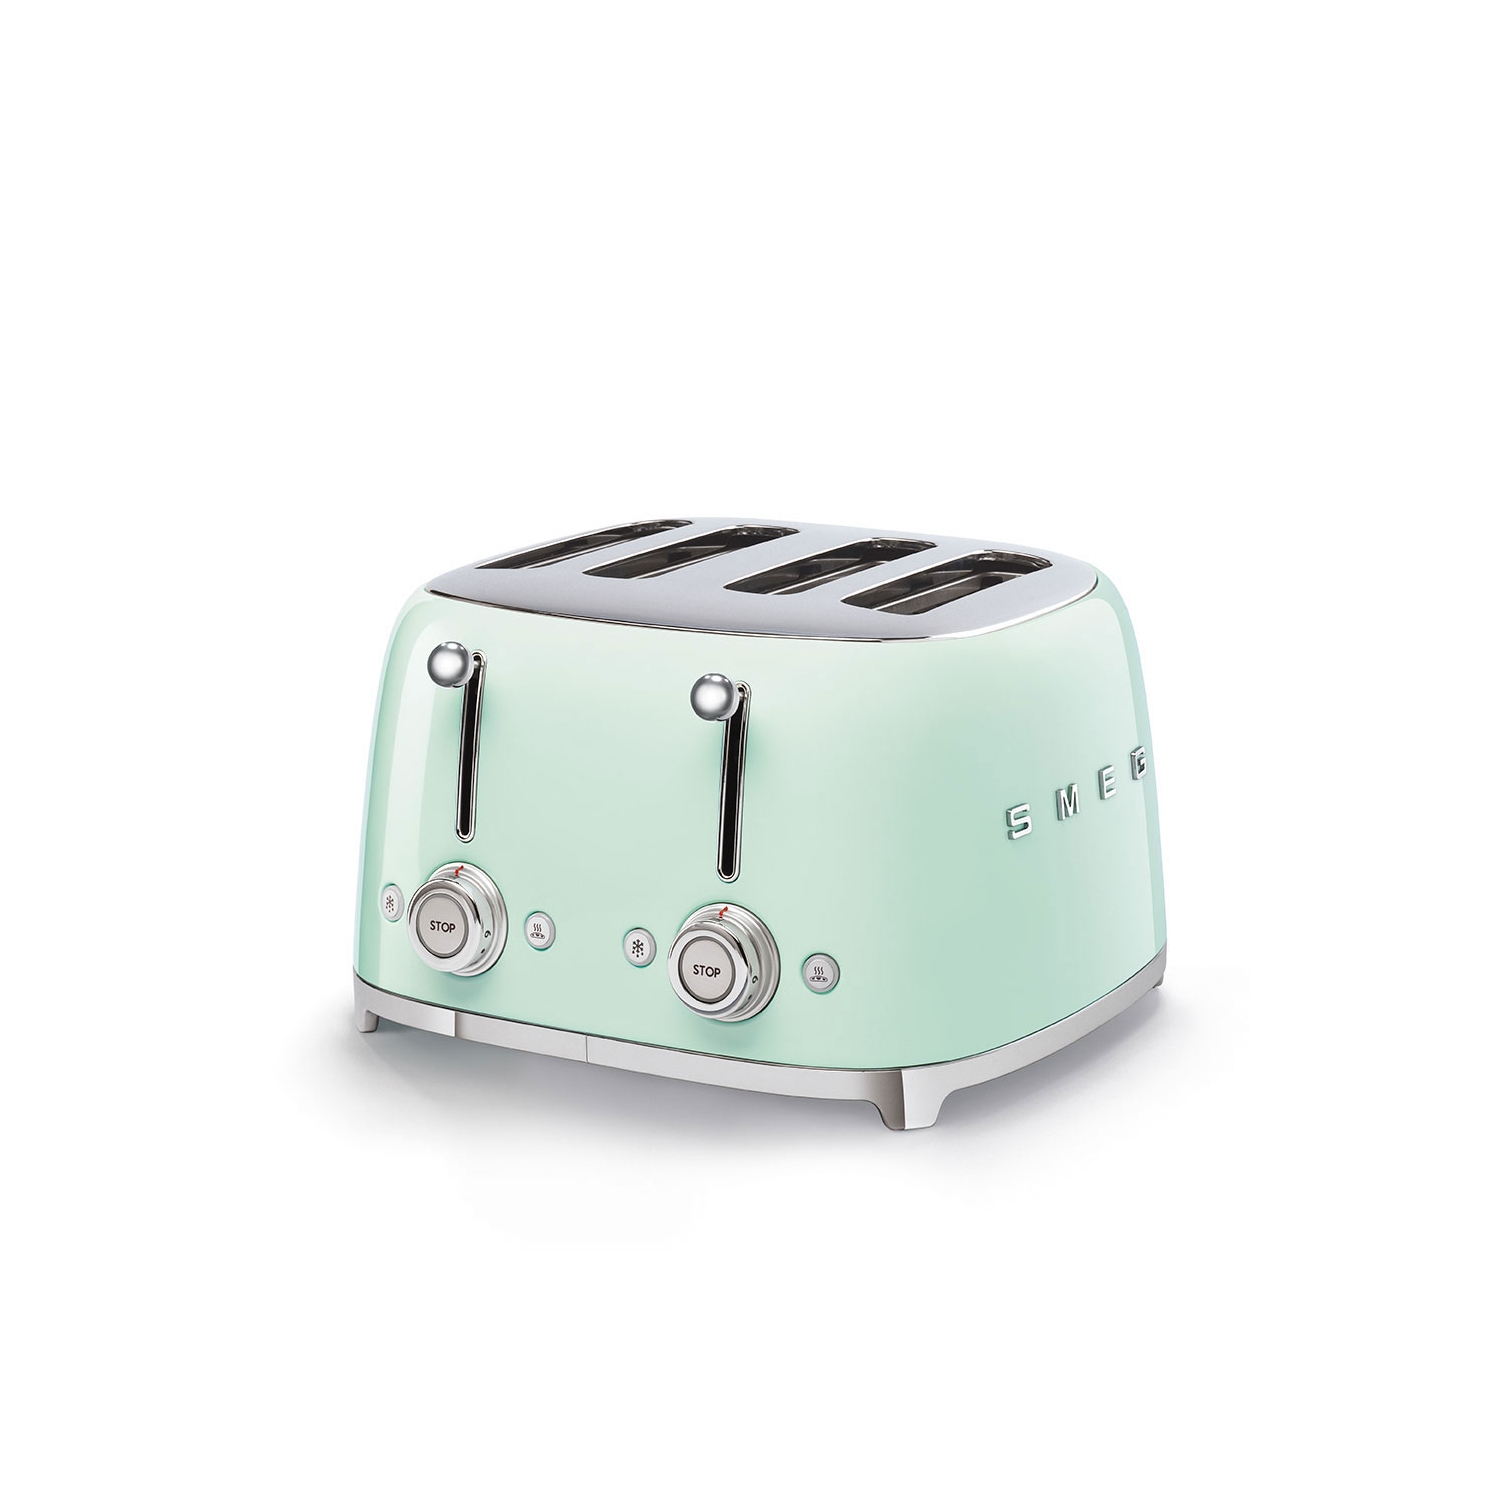 Smeg 4 Slice Toaster - Pastel Green - 1